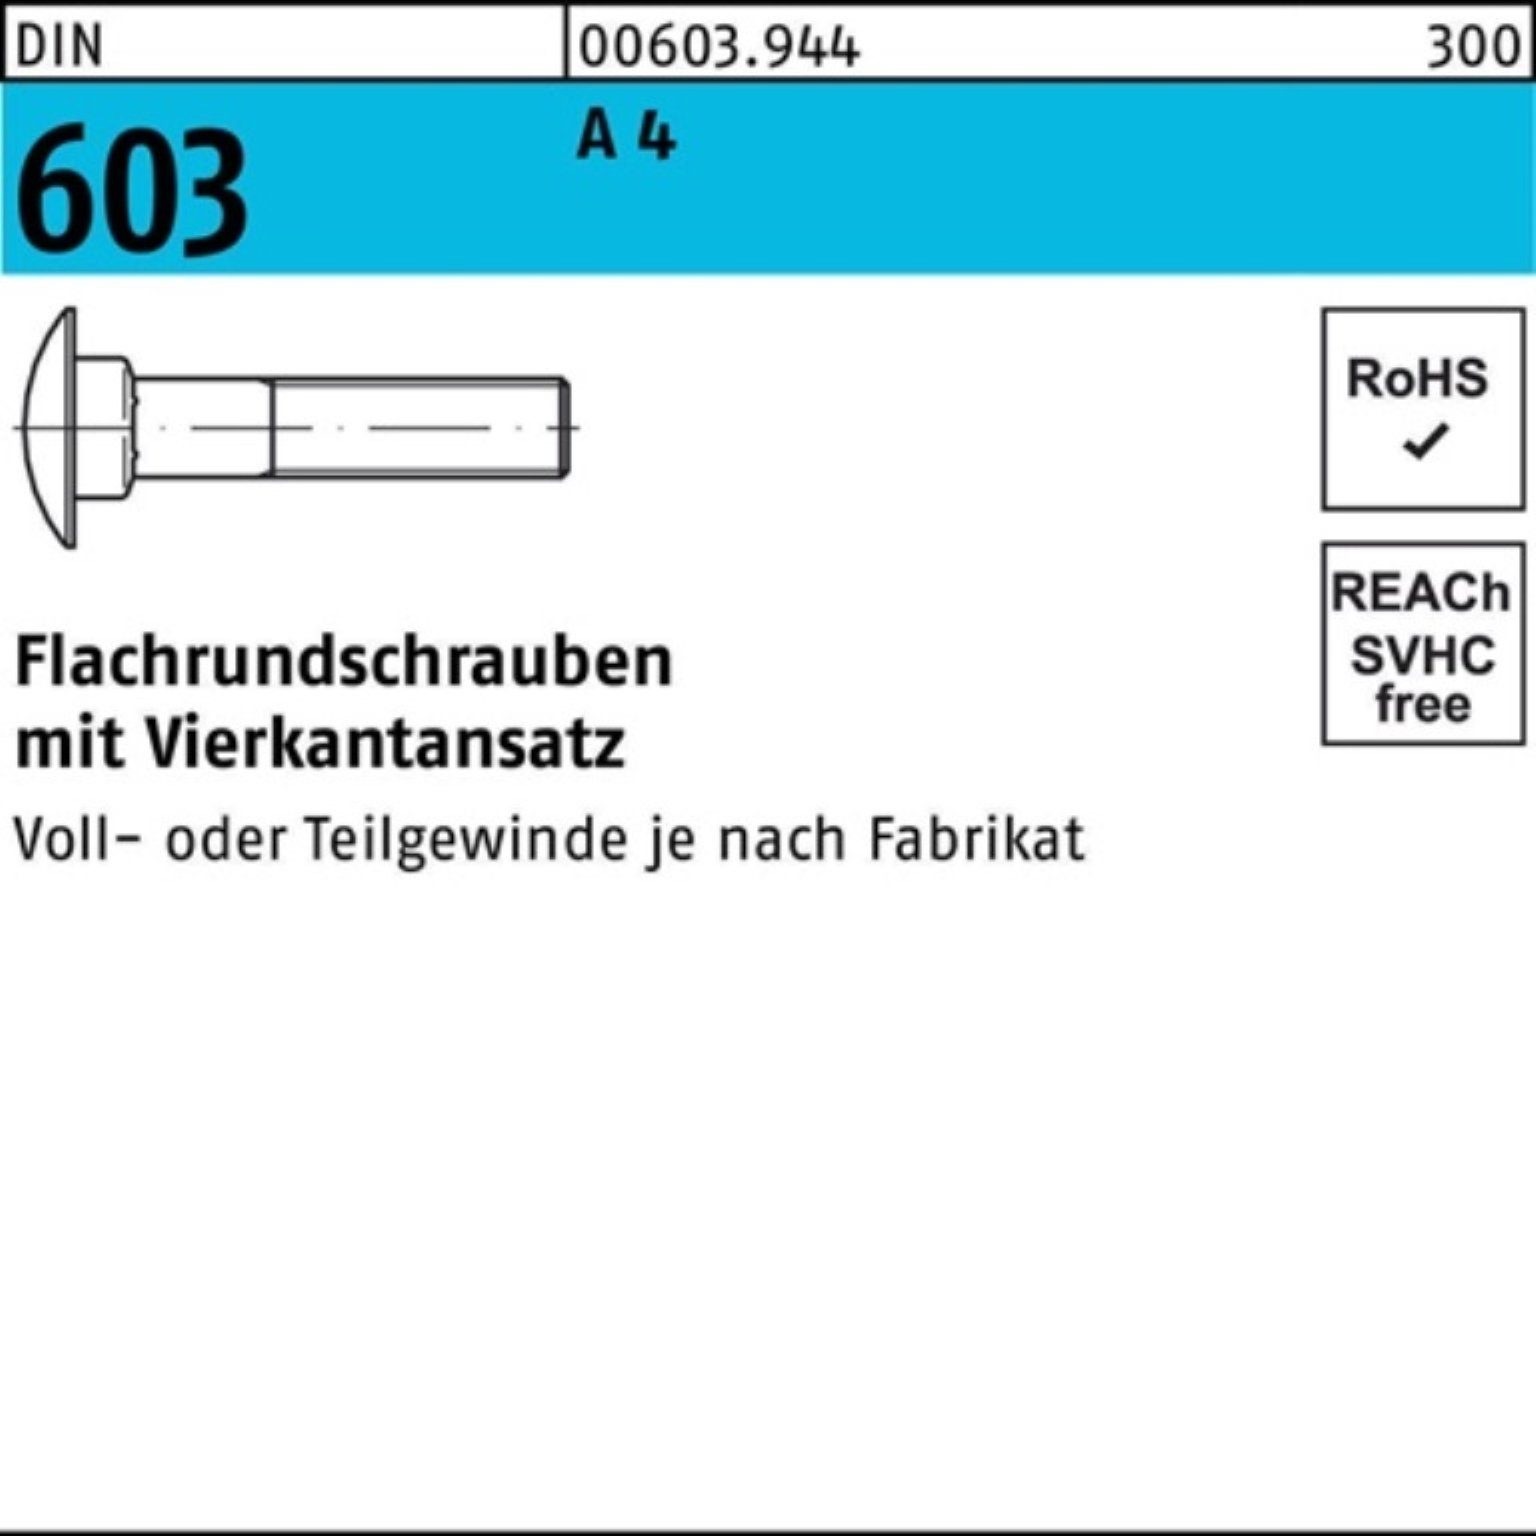 Reyher Flachrundschraube Vierkantansatz 603 DIN Stü 75 100er Pack 10 M8x A Schraube 4